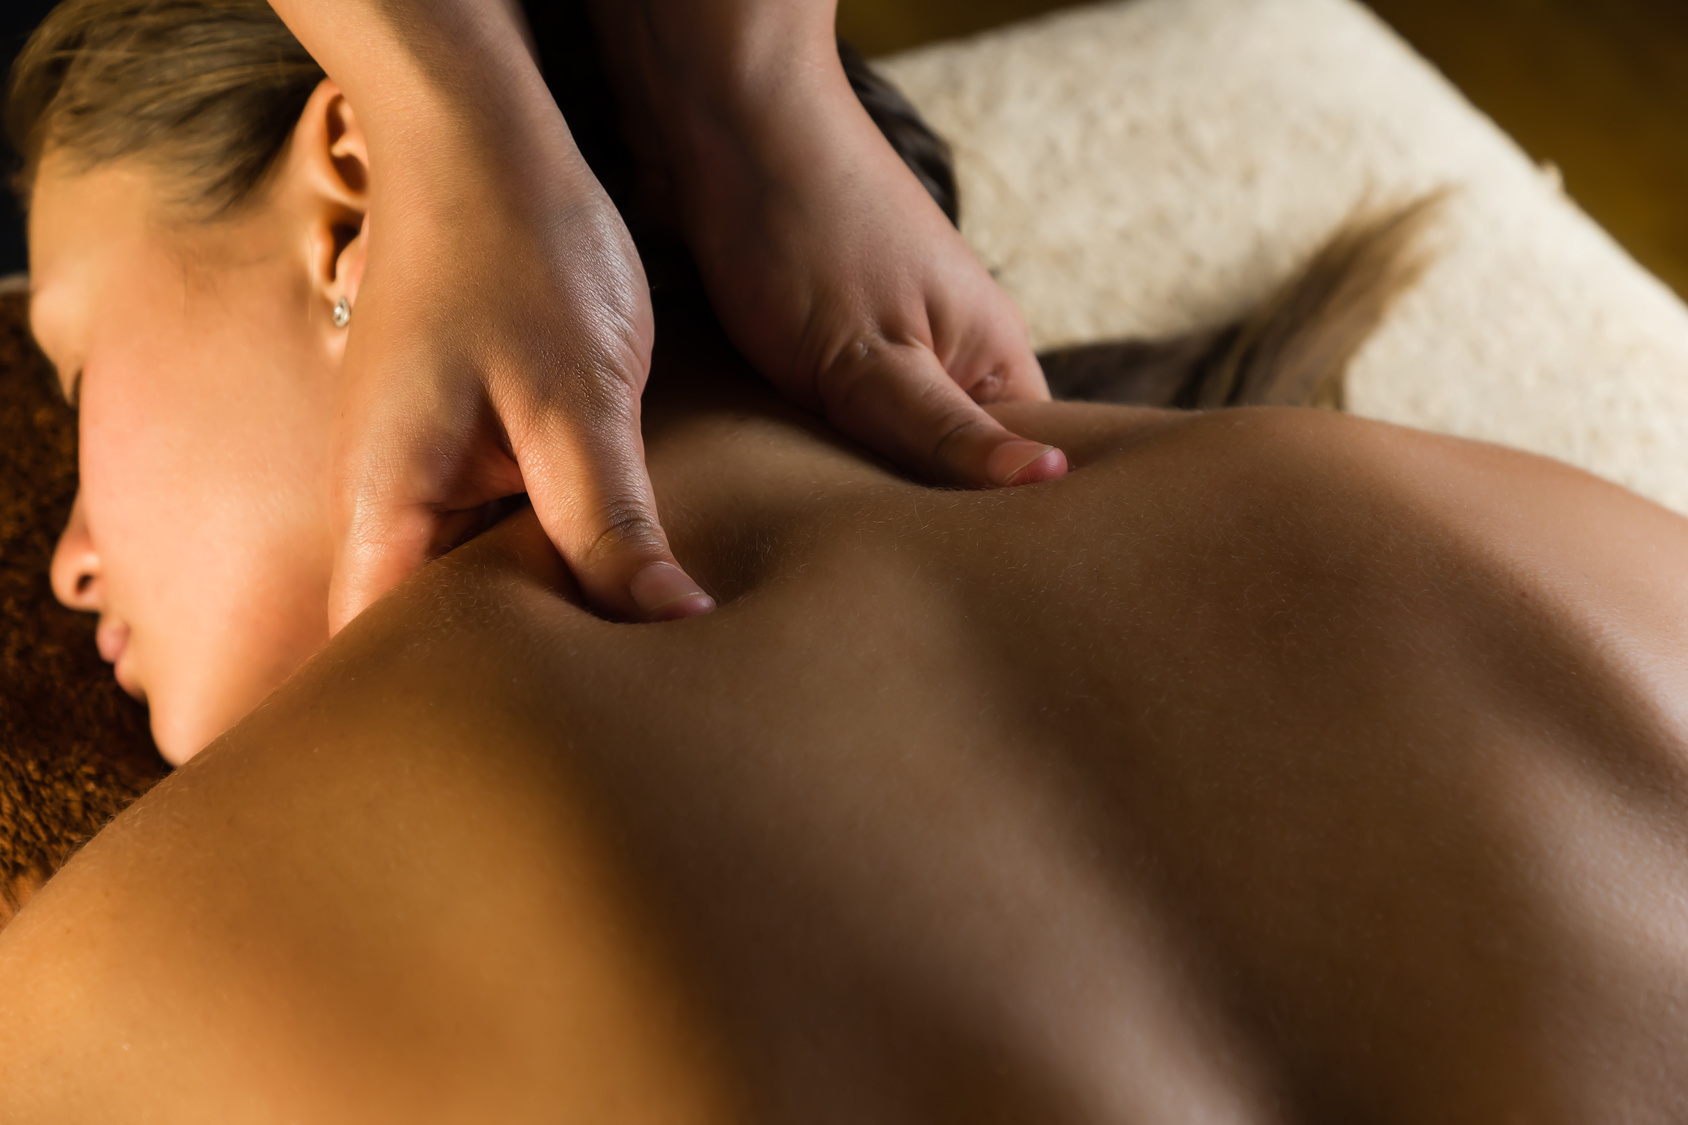 massaggio-decontratturante-che-cose-come-viene-praticato-benefici-e-precauzioni